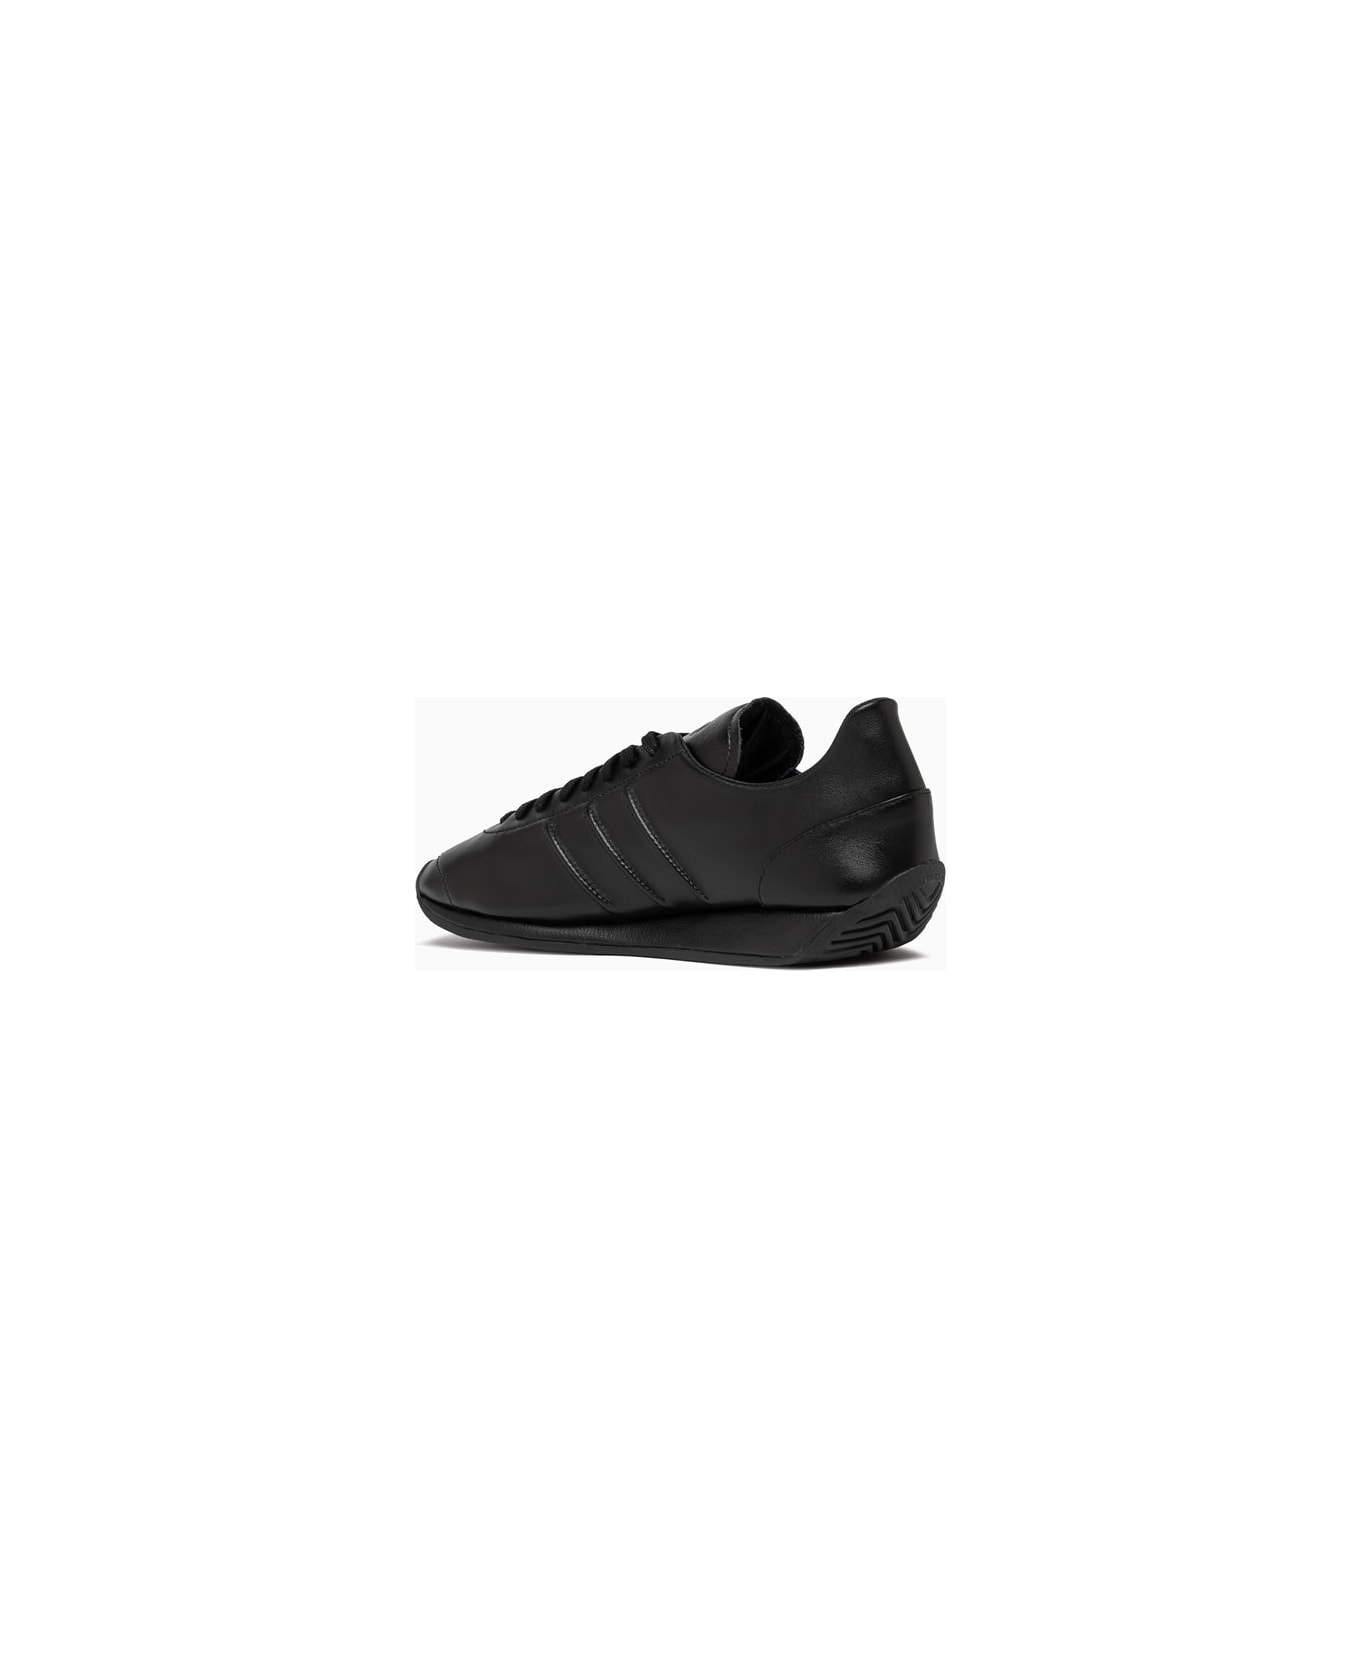 Y-3 Adidas Y-3 Country Sneakers Ie5697 - Black スニーカー